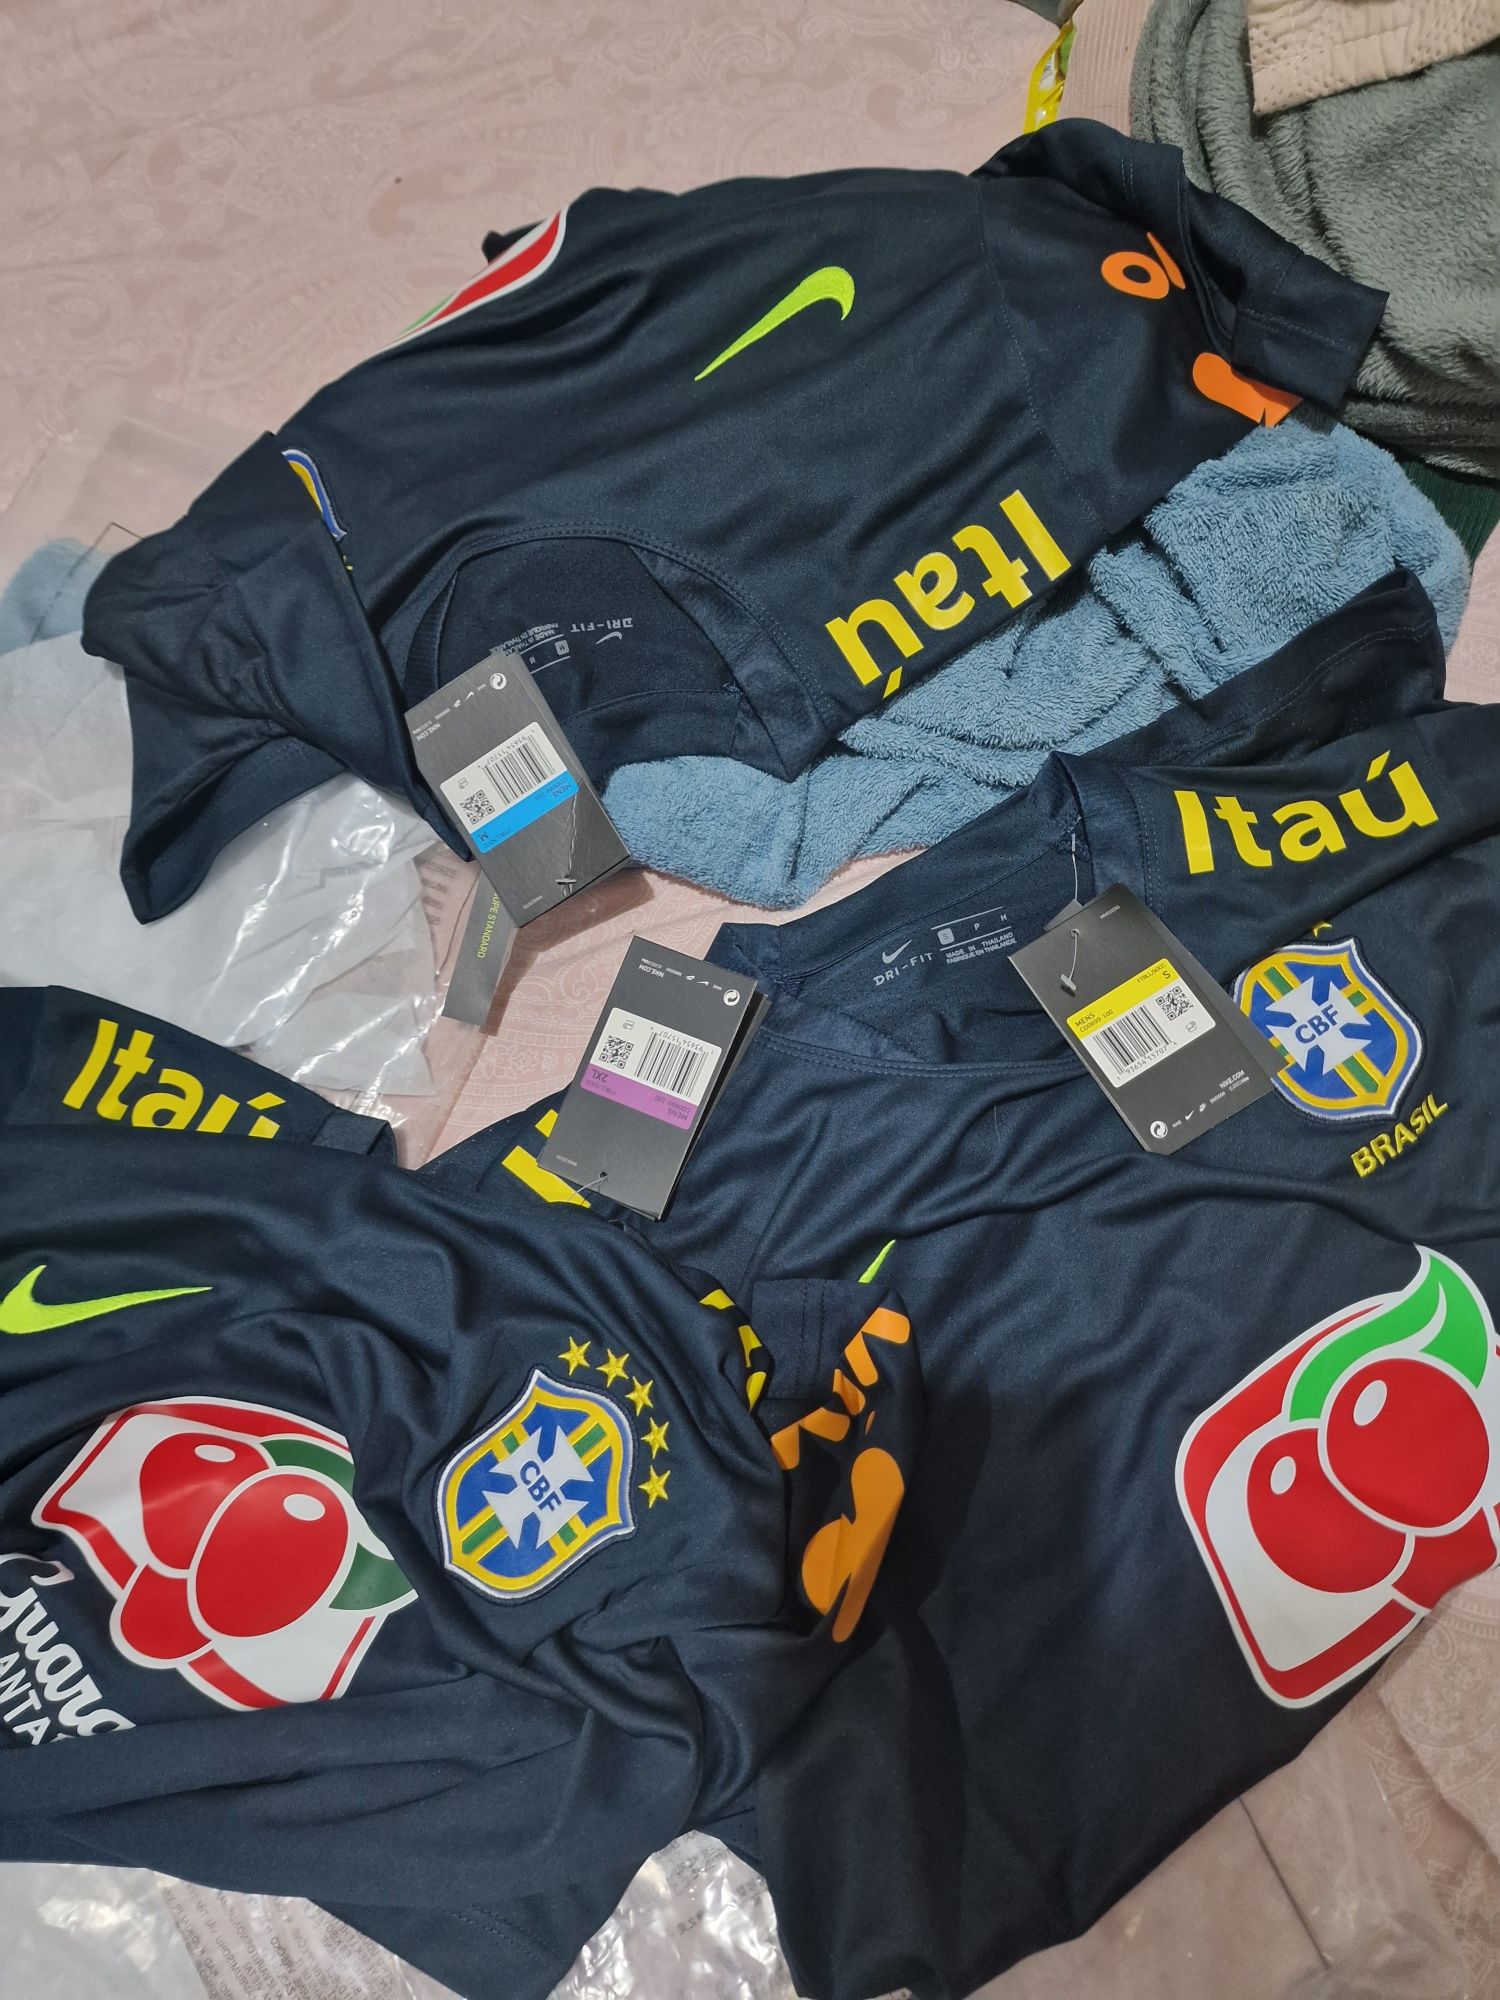 Camisa do Brasil, Seleção Brasileira